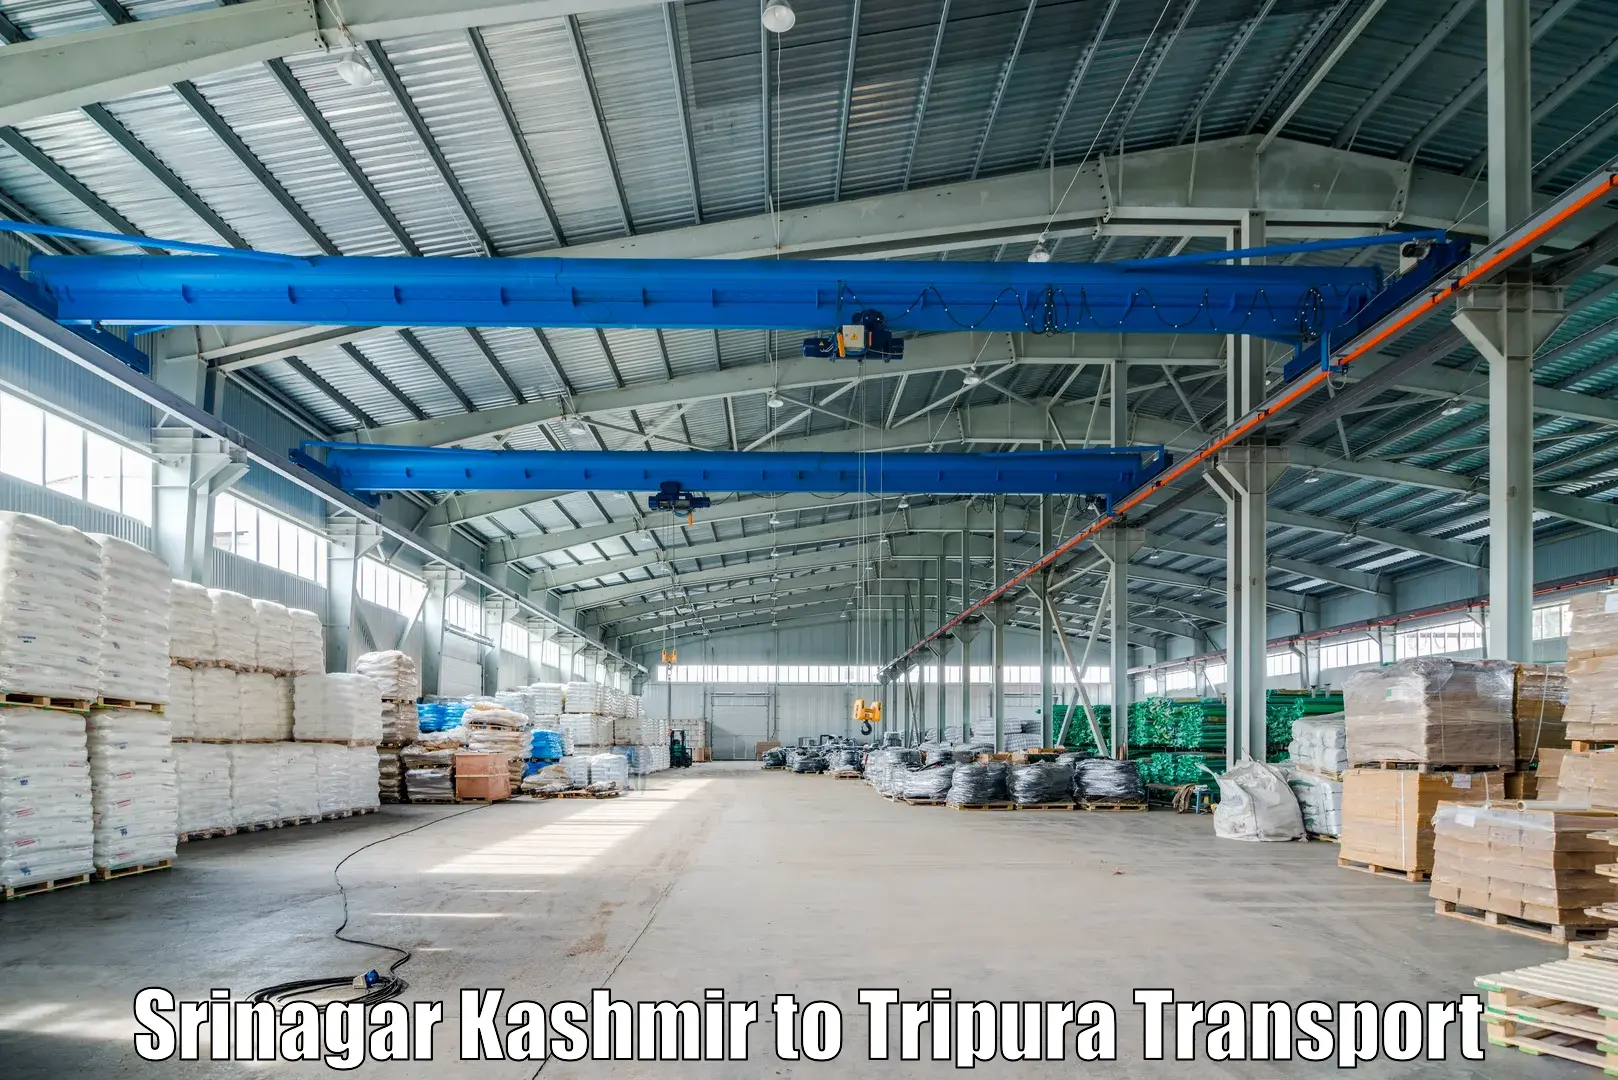 Furniture transport service Srinagar Kashmir to Kailashahar